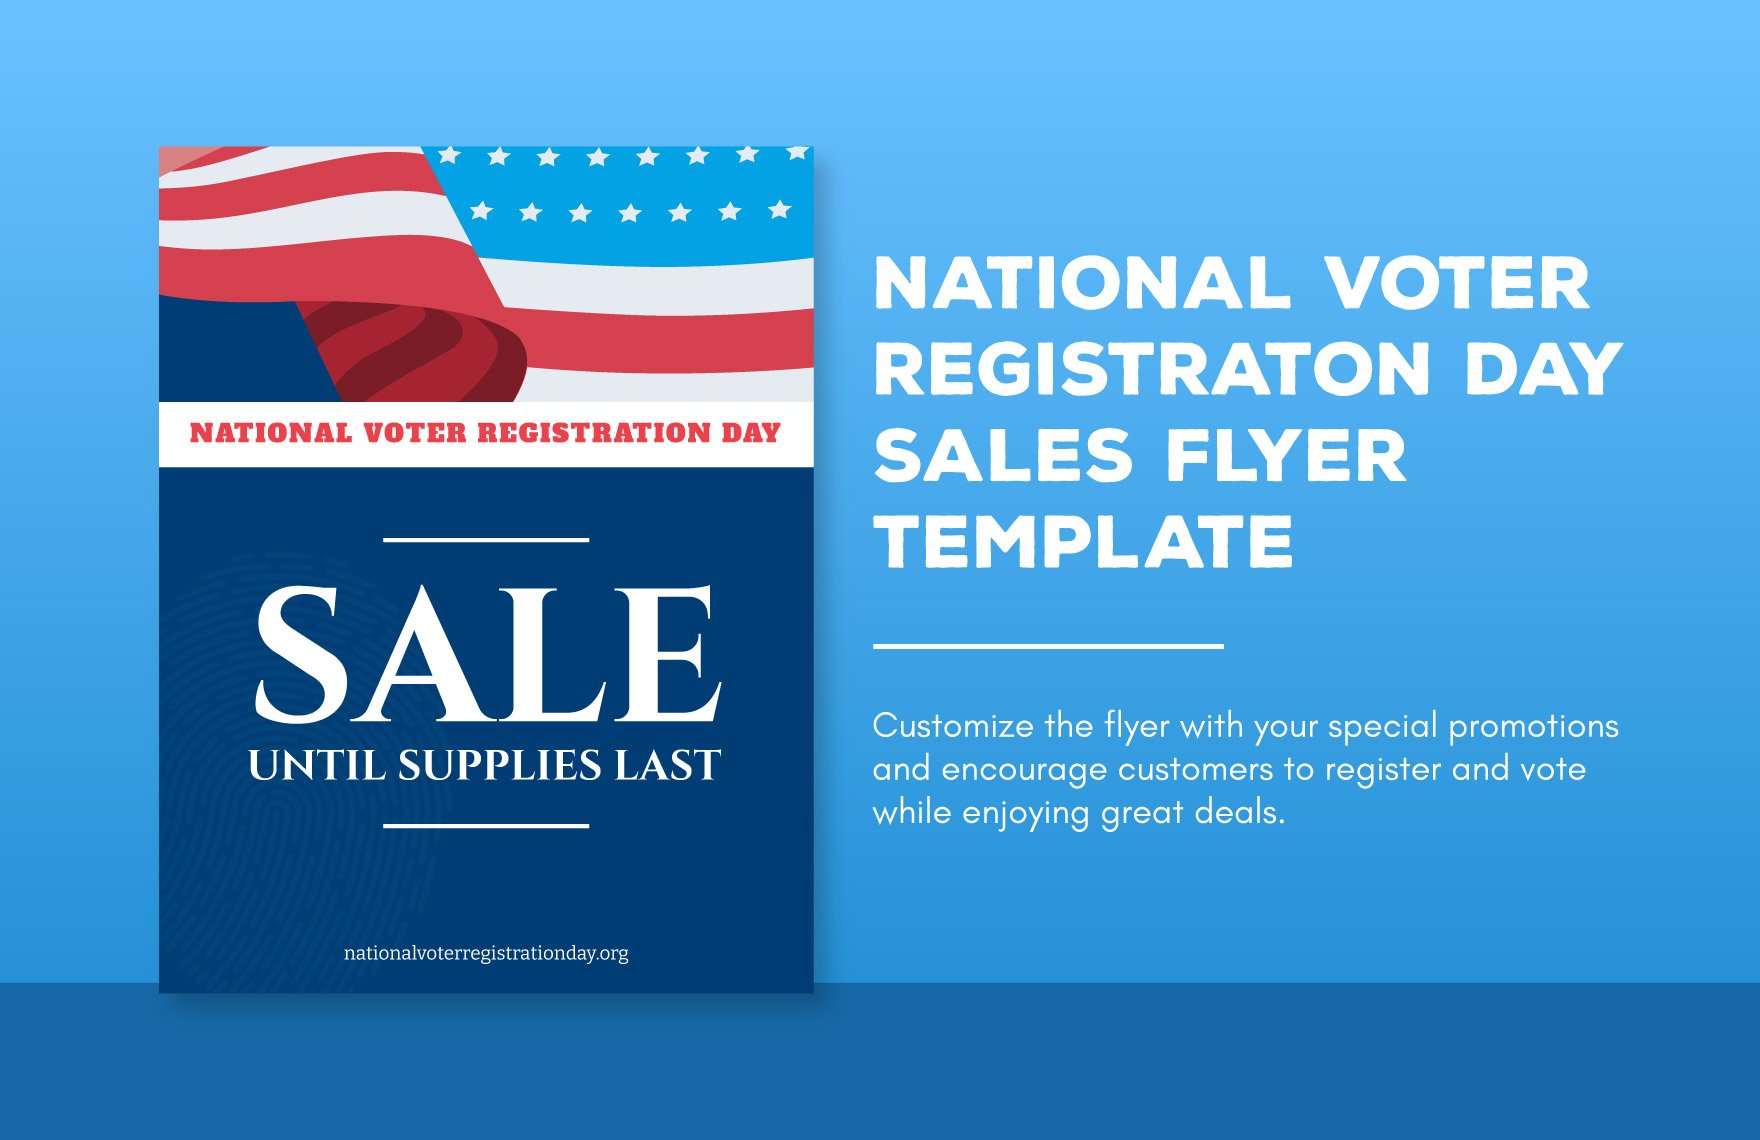 National Voter Registration Day Sales Flyer Template